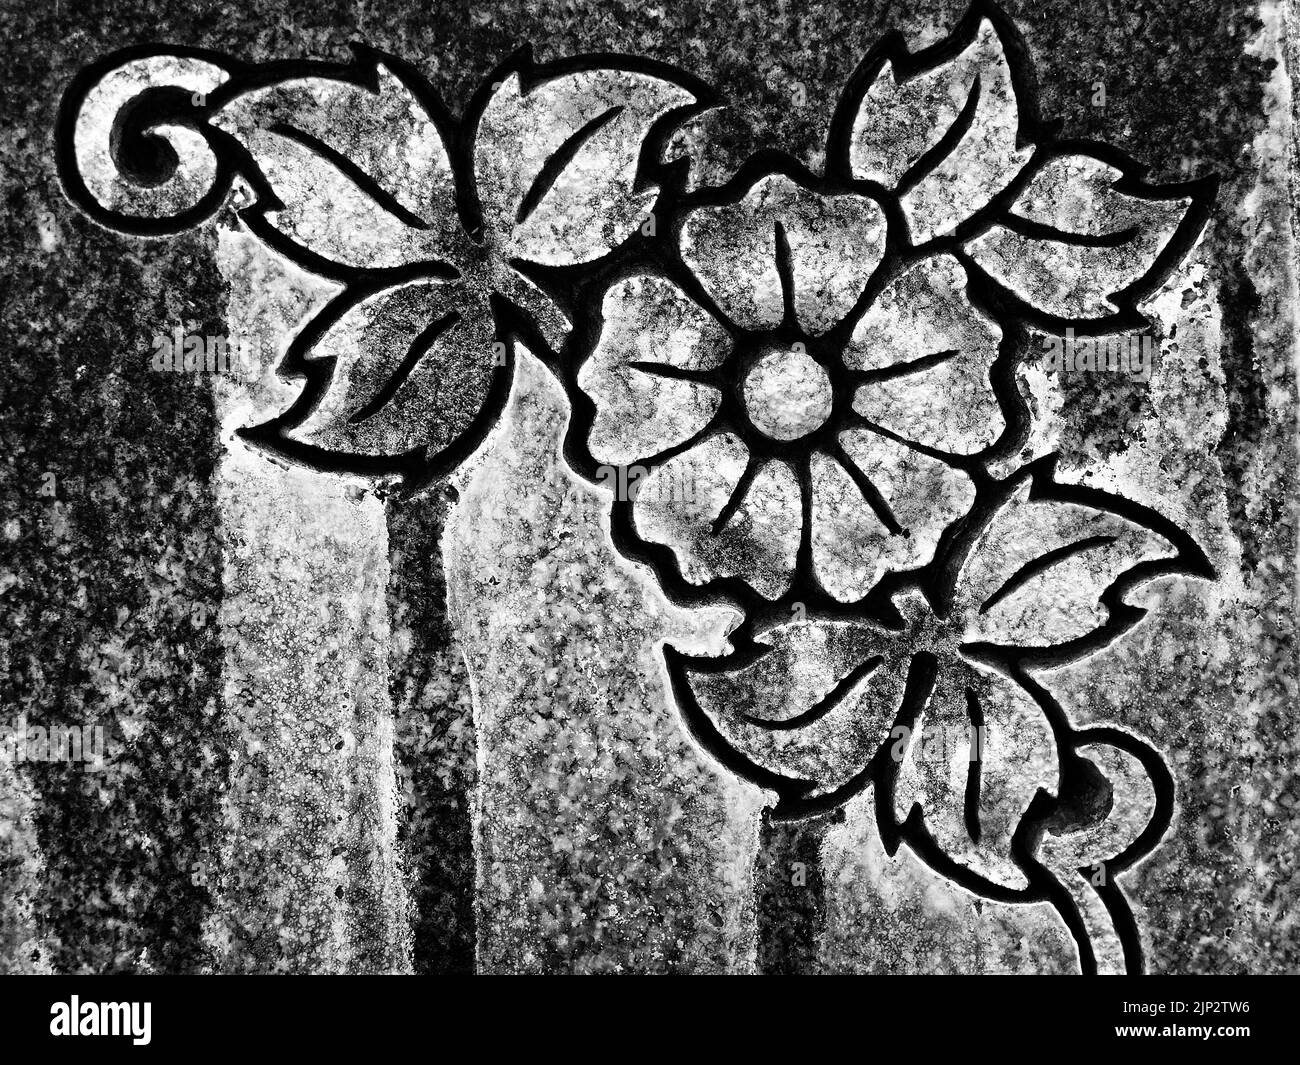 Motifs floraux de fleurs sculptées dans une texture pierre pour l'art Banque D'Images